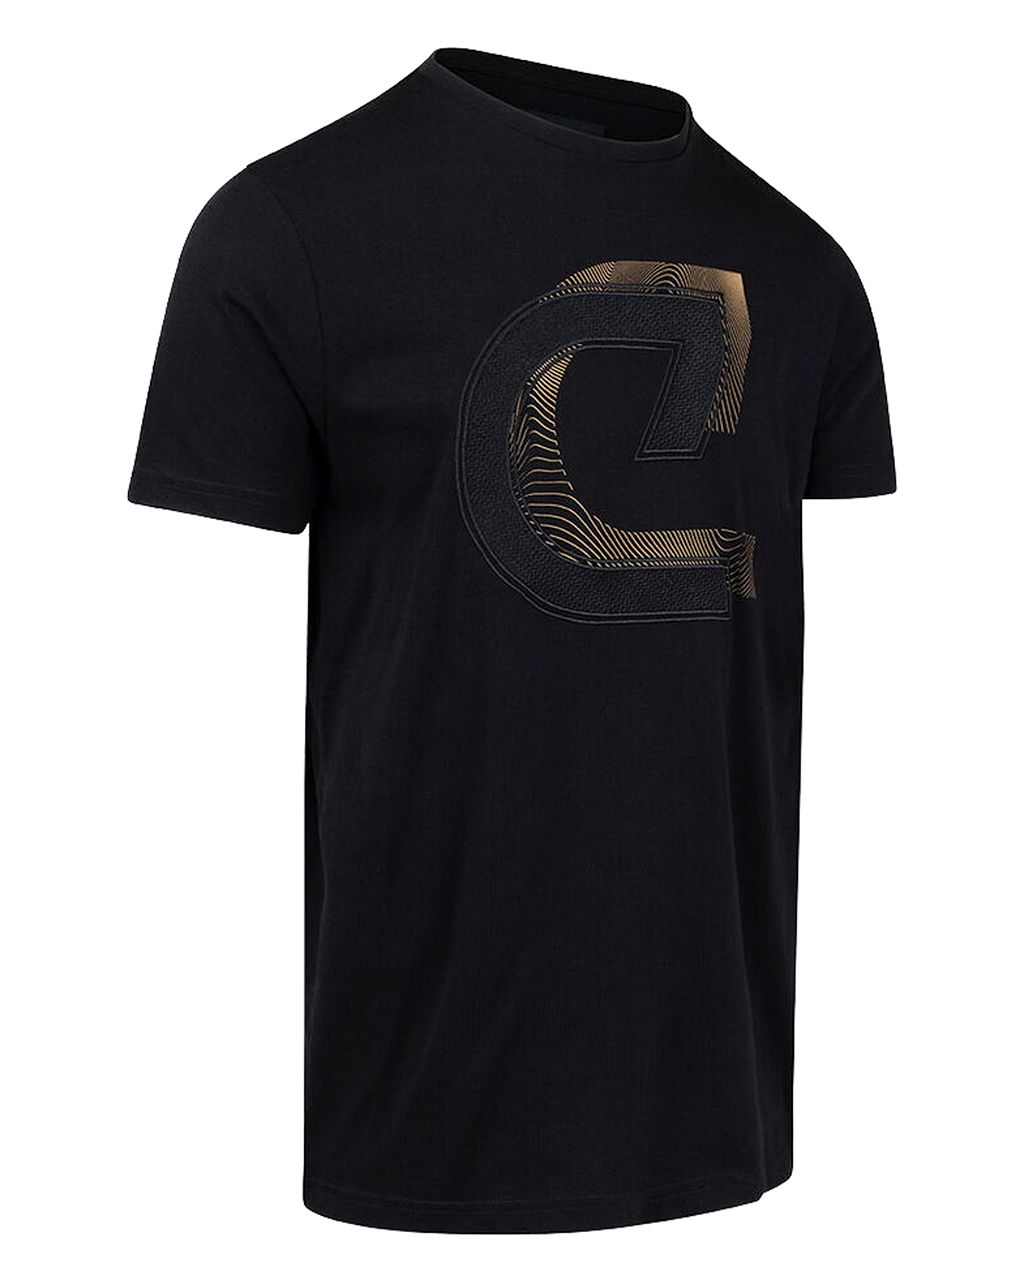 Cruyff Julien T-shirt Zwart 078516-001-L